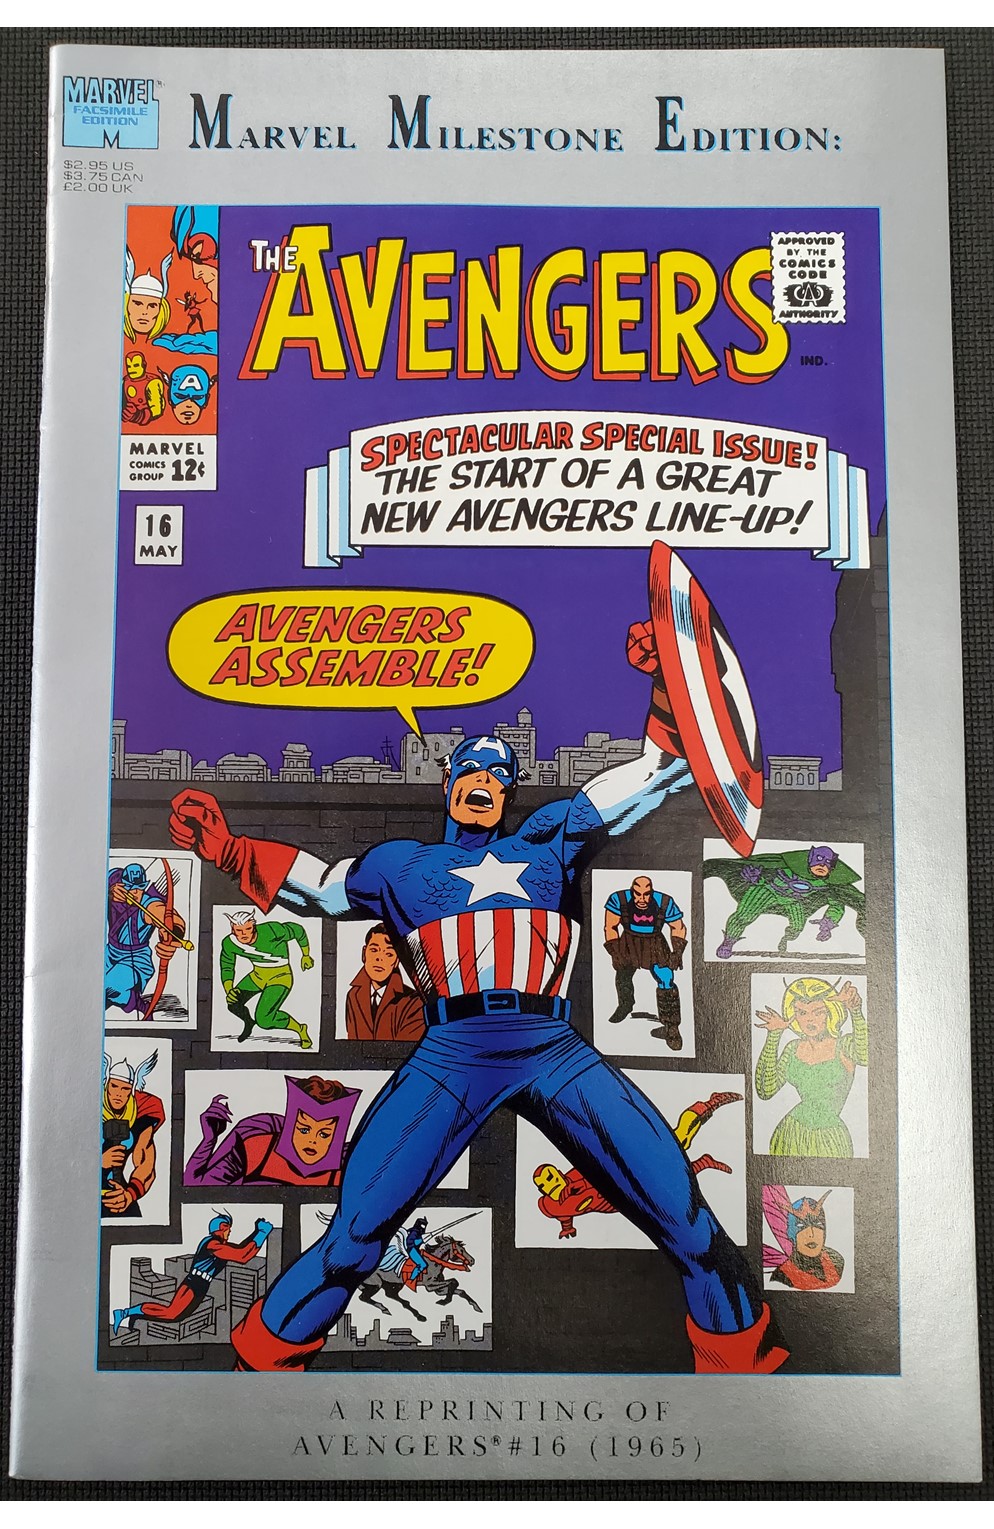 Marvel Milestone Edition Avengers #16 (Marvel 1993)